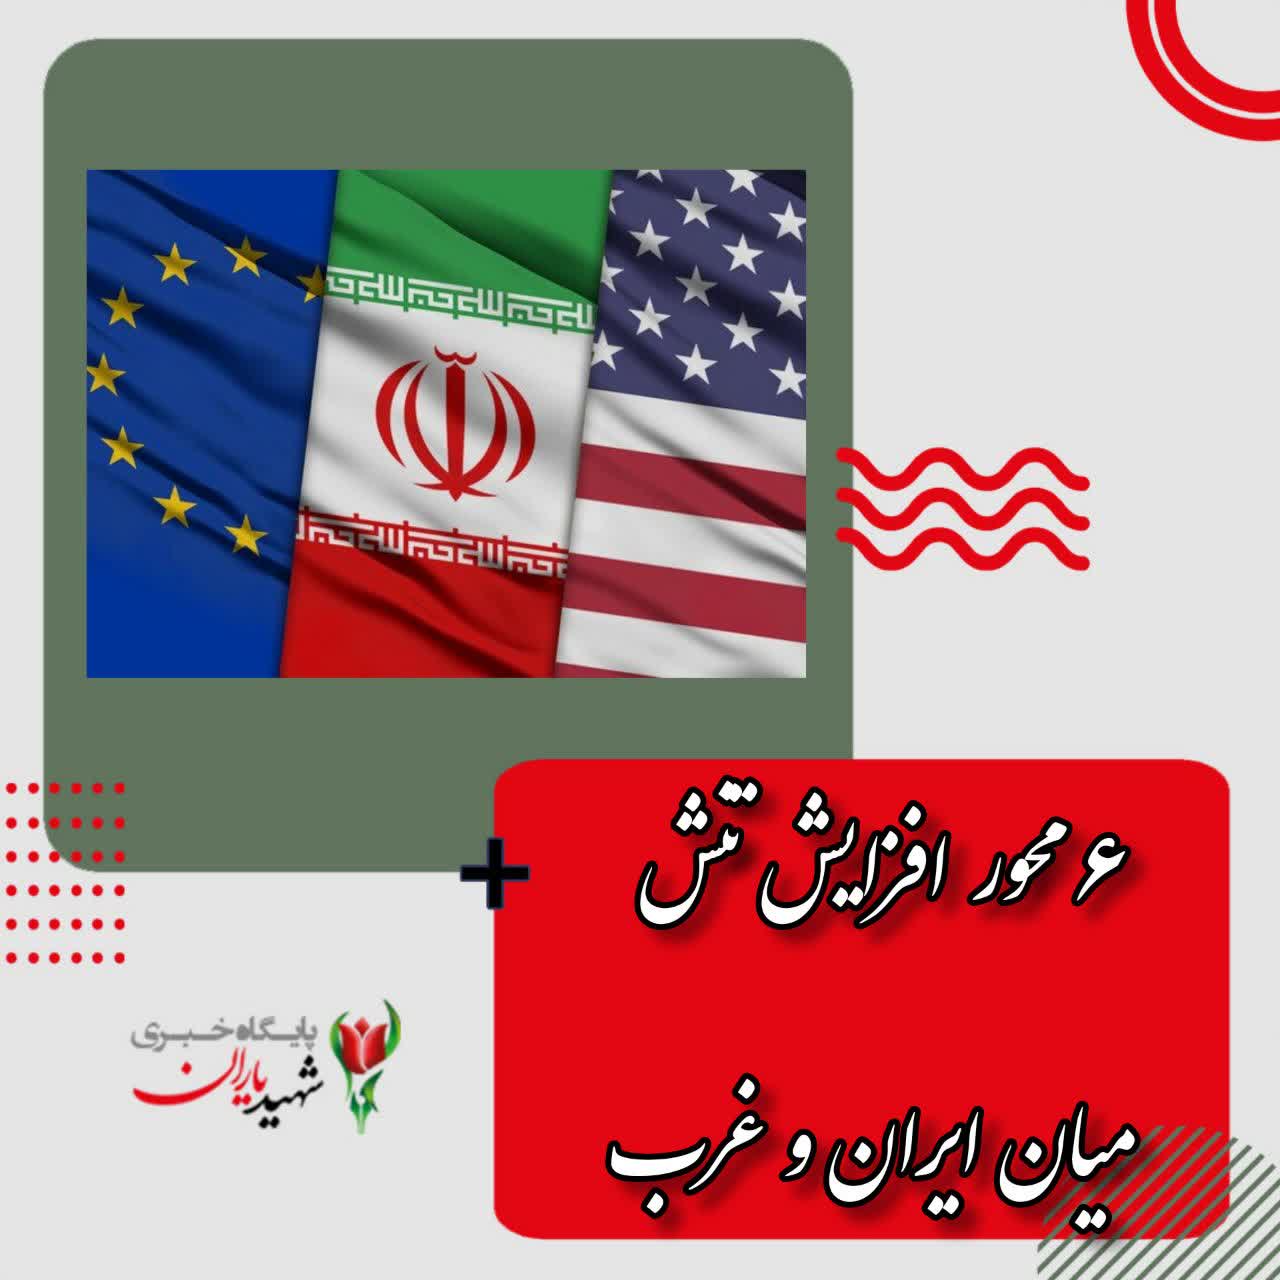 ۶ محور افزایش تنش میان ایران و غرب